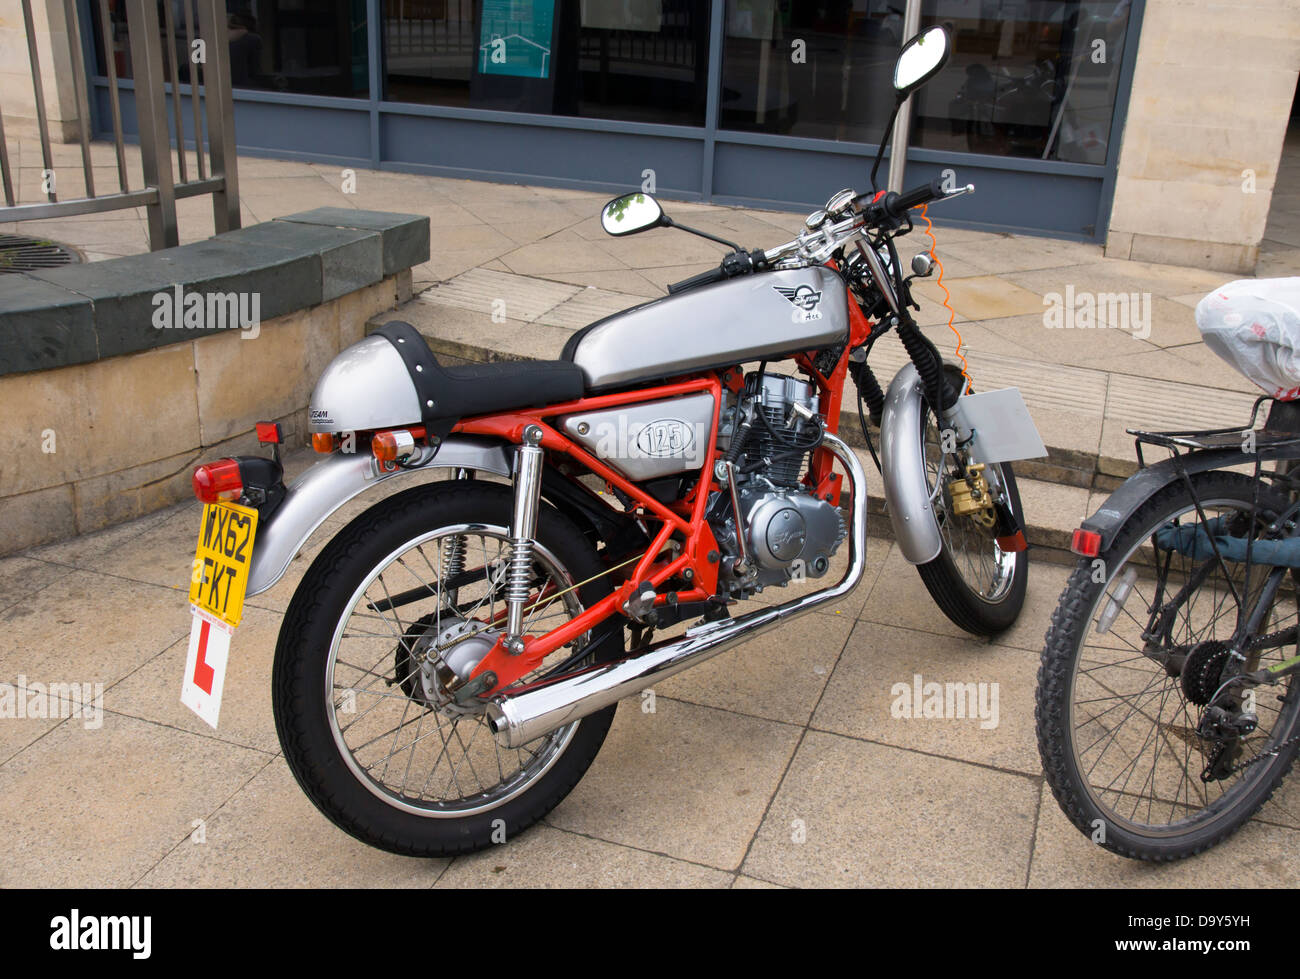 Un 125cc Moto dans le style d'un 1960 Cafe Racer. Un ace de l'équipe Sky  Photo Stock - Alamy